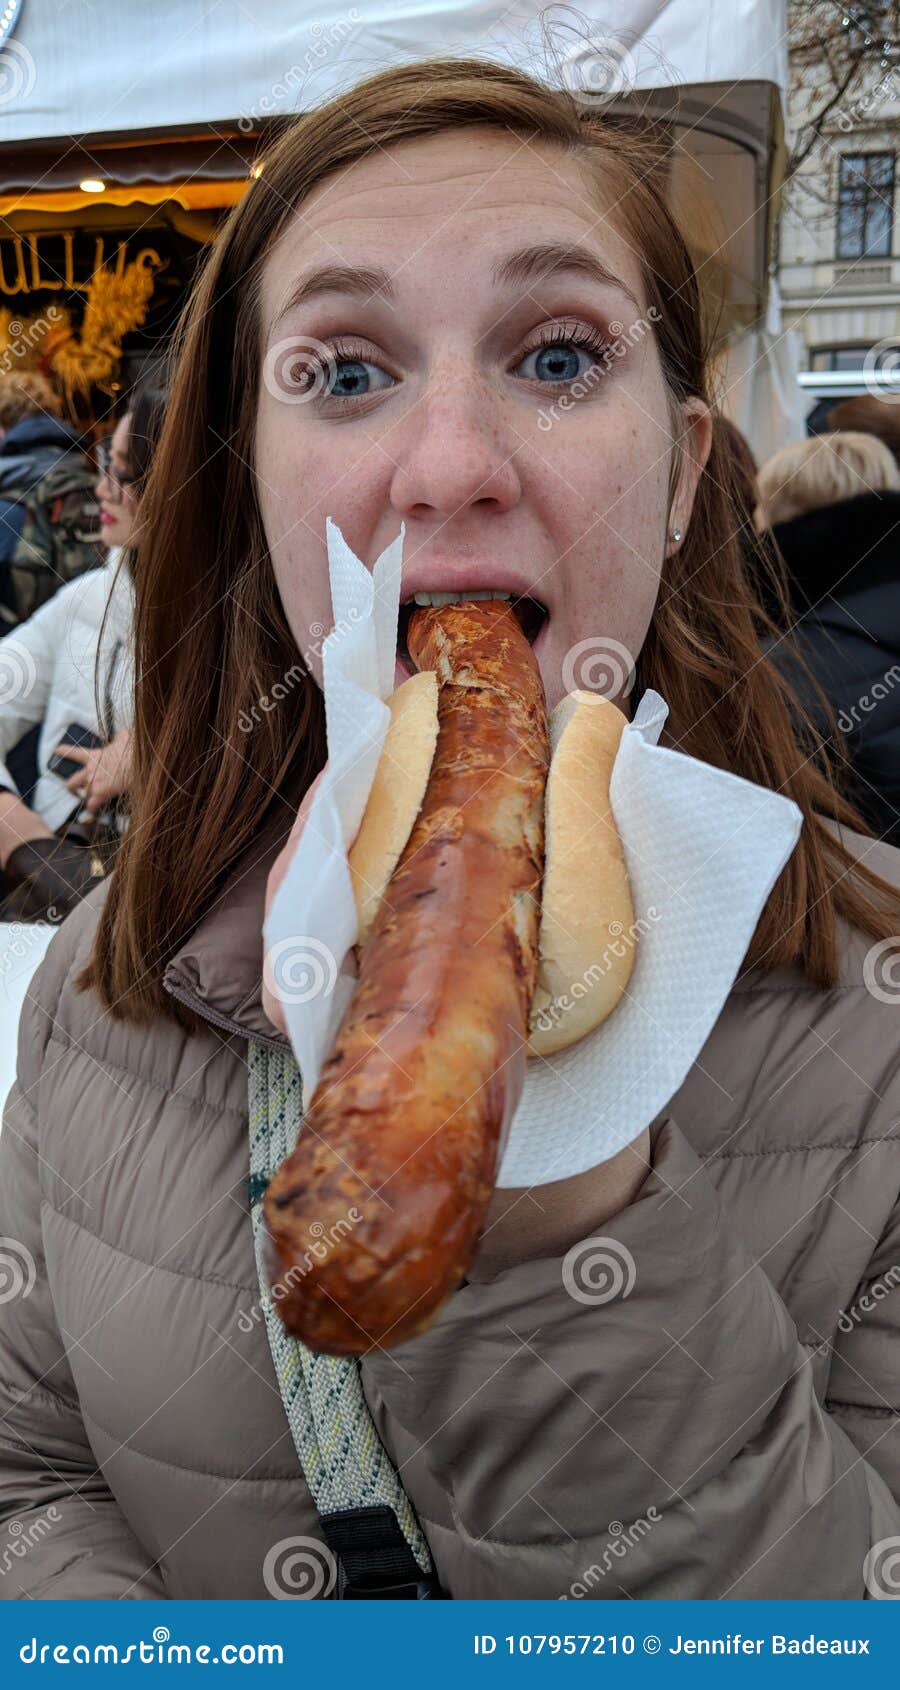 Sausage Girl